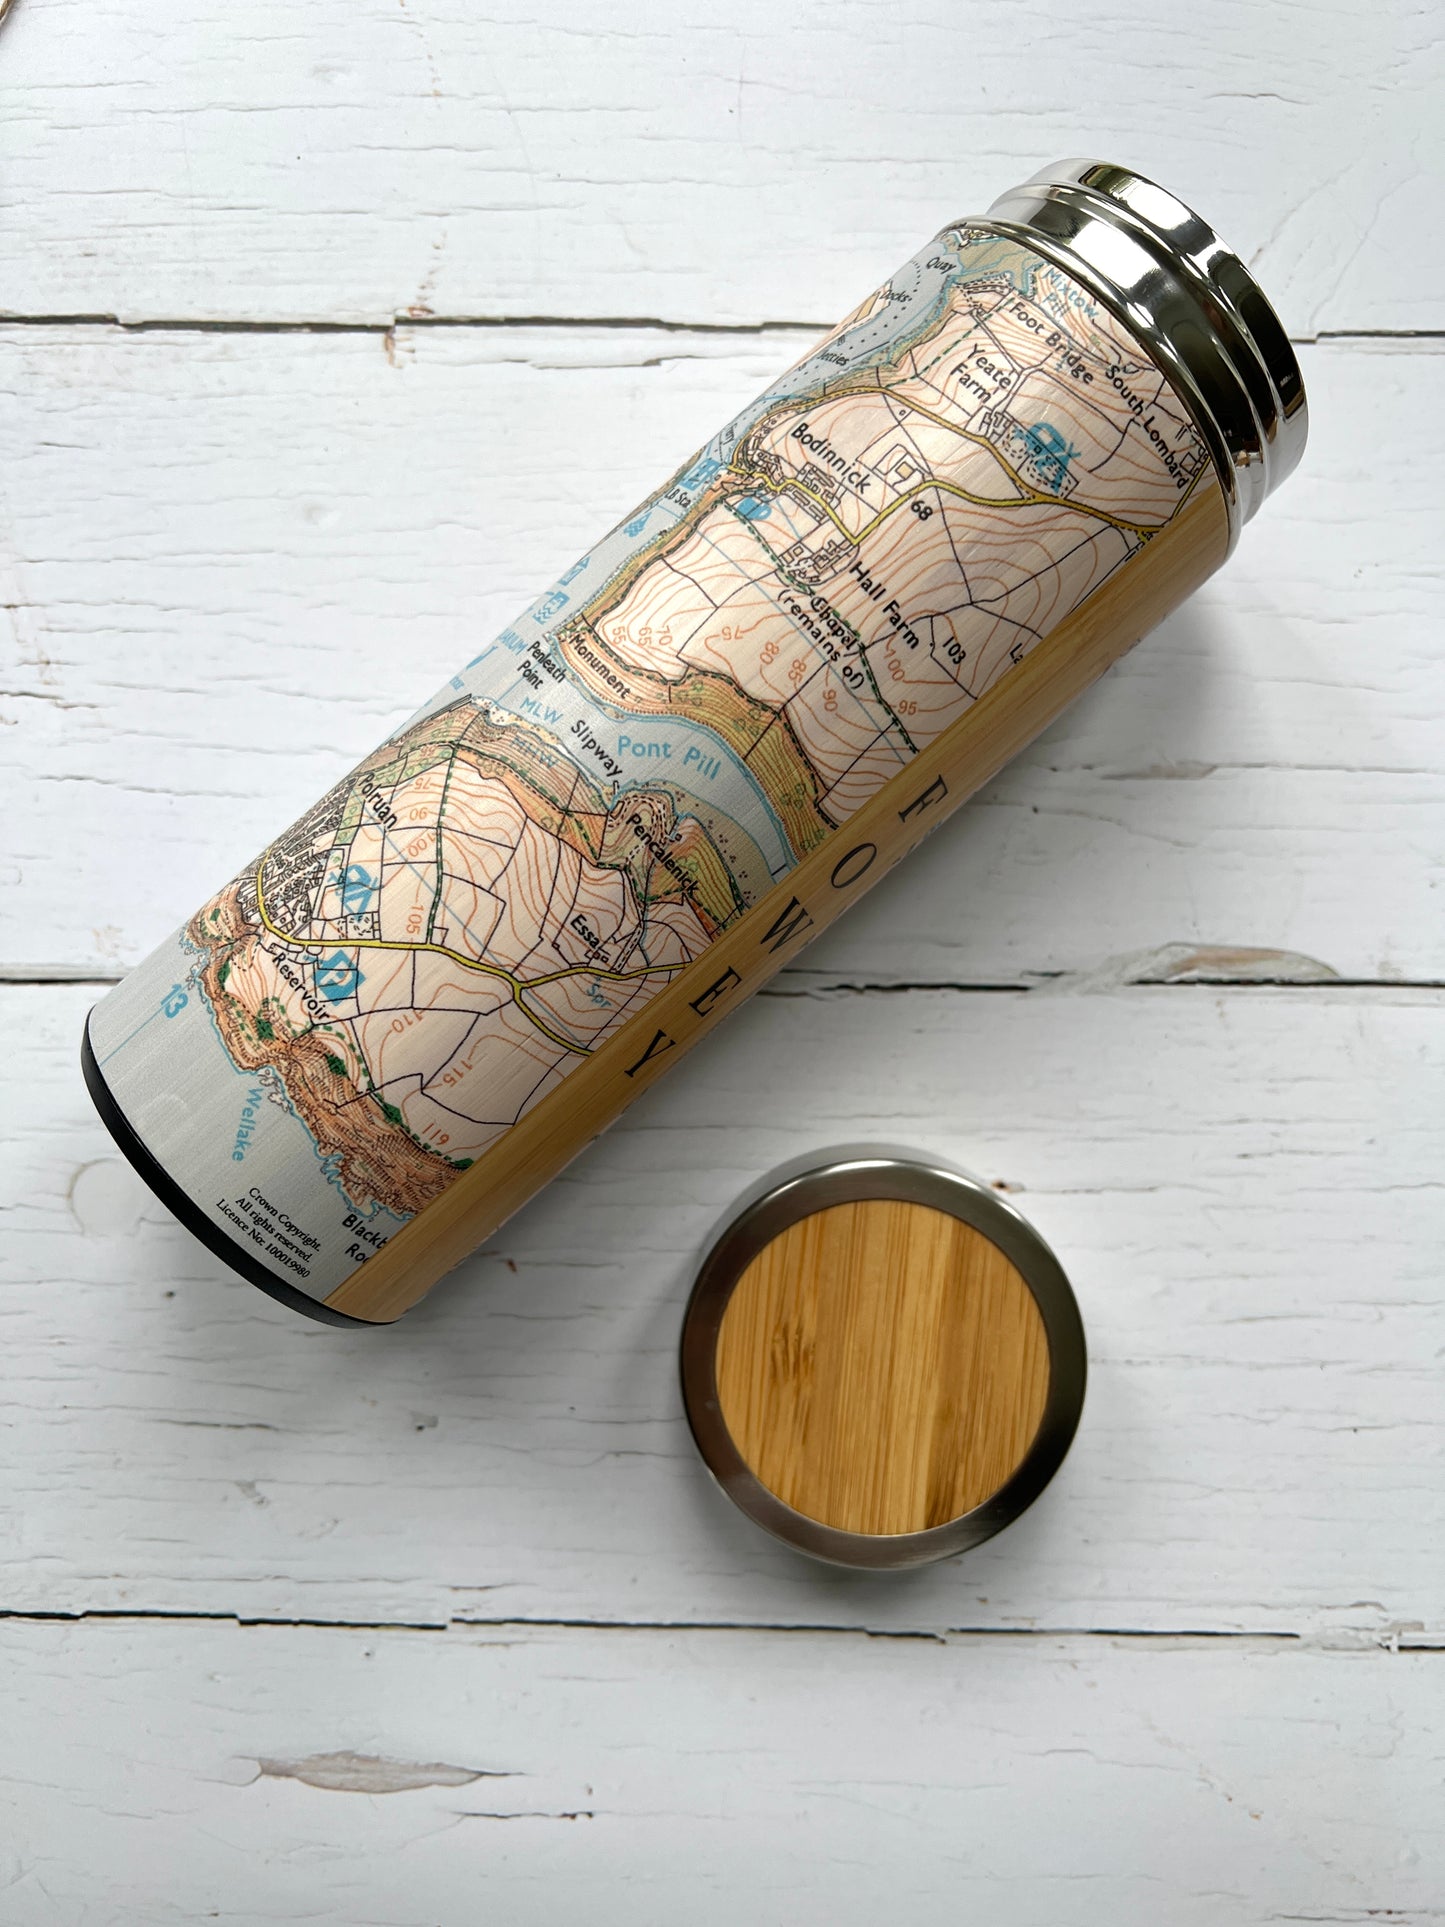 Fowey Map Wooden Stainless Steel Water Bottle Flask